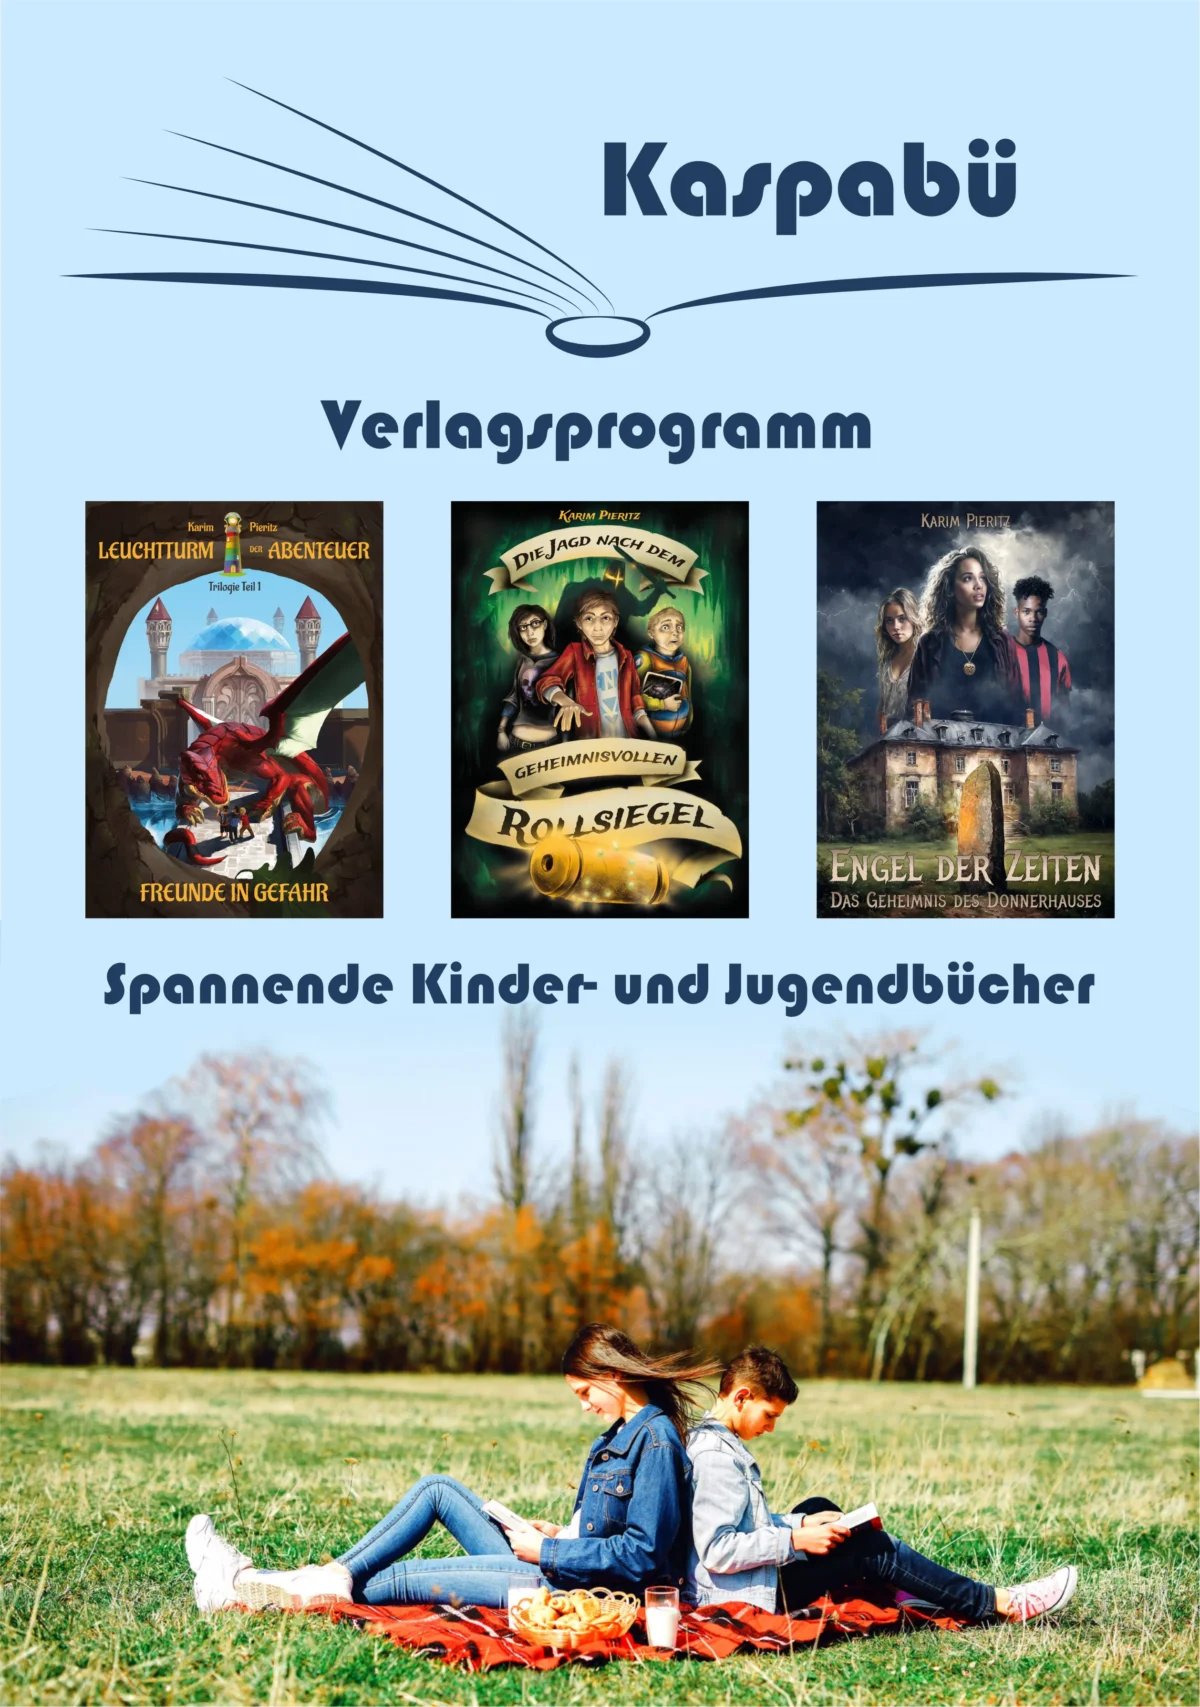 Verlagsprogramm: Spannende Kinder- und Jugendbücher